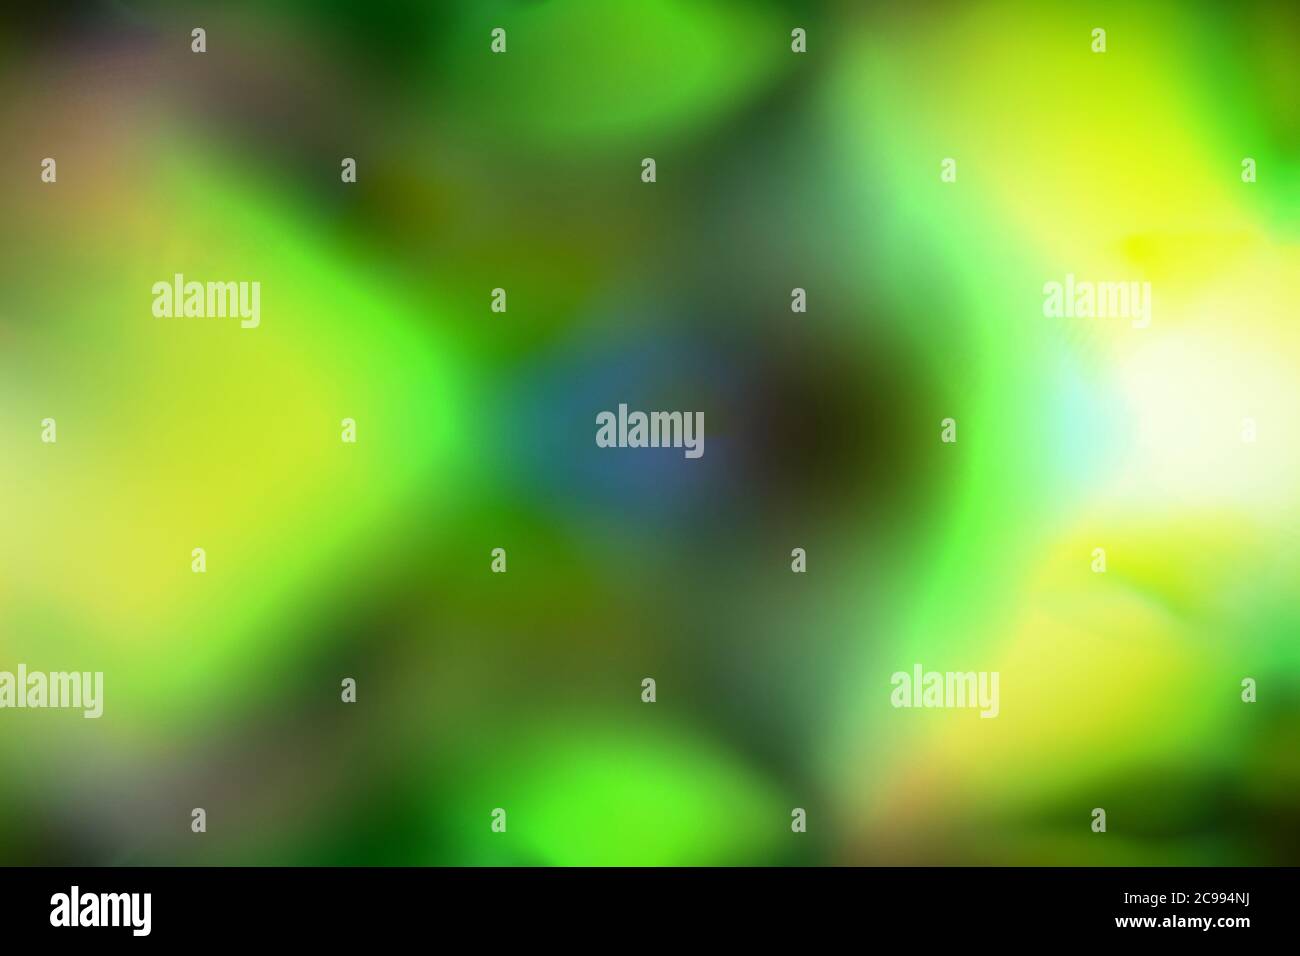 illustration numérique abstraite d'ondes lumineuses de couleur vert néon avec des tirets de bleu et de violet ressemblant à de la lave pour un fond Banque D'Images